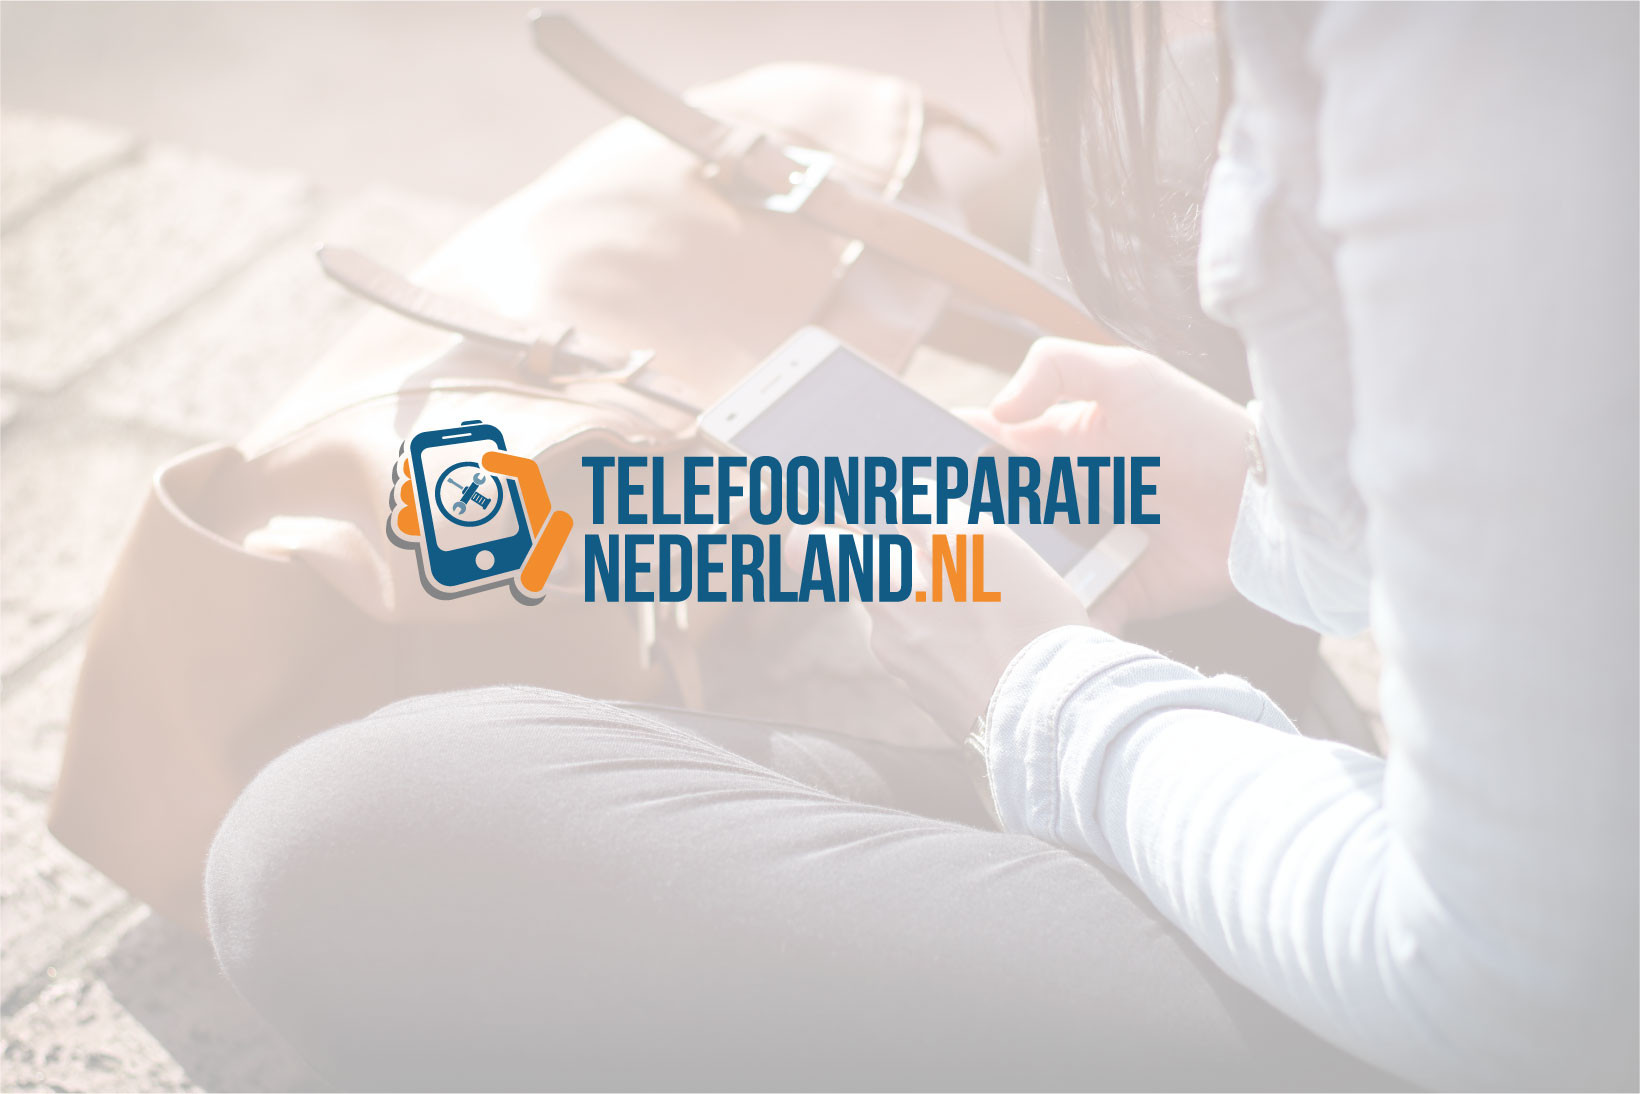 (c) Telefoonreparatienederland.nl